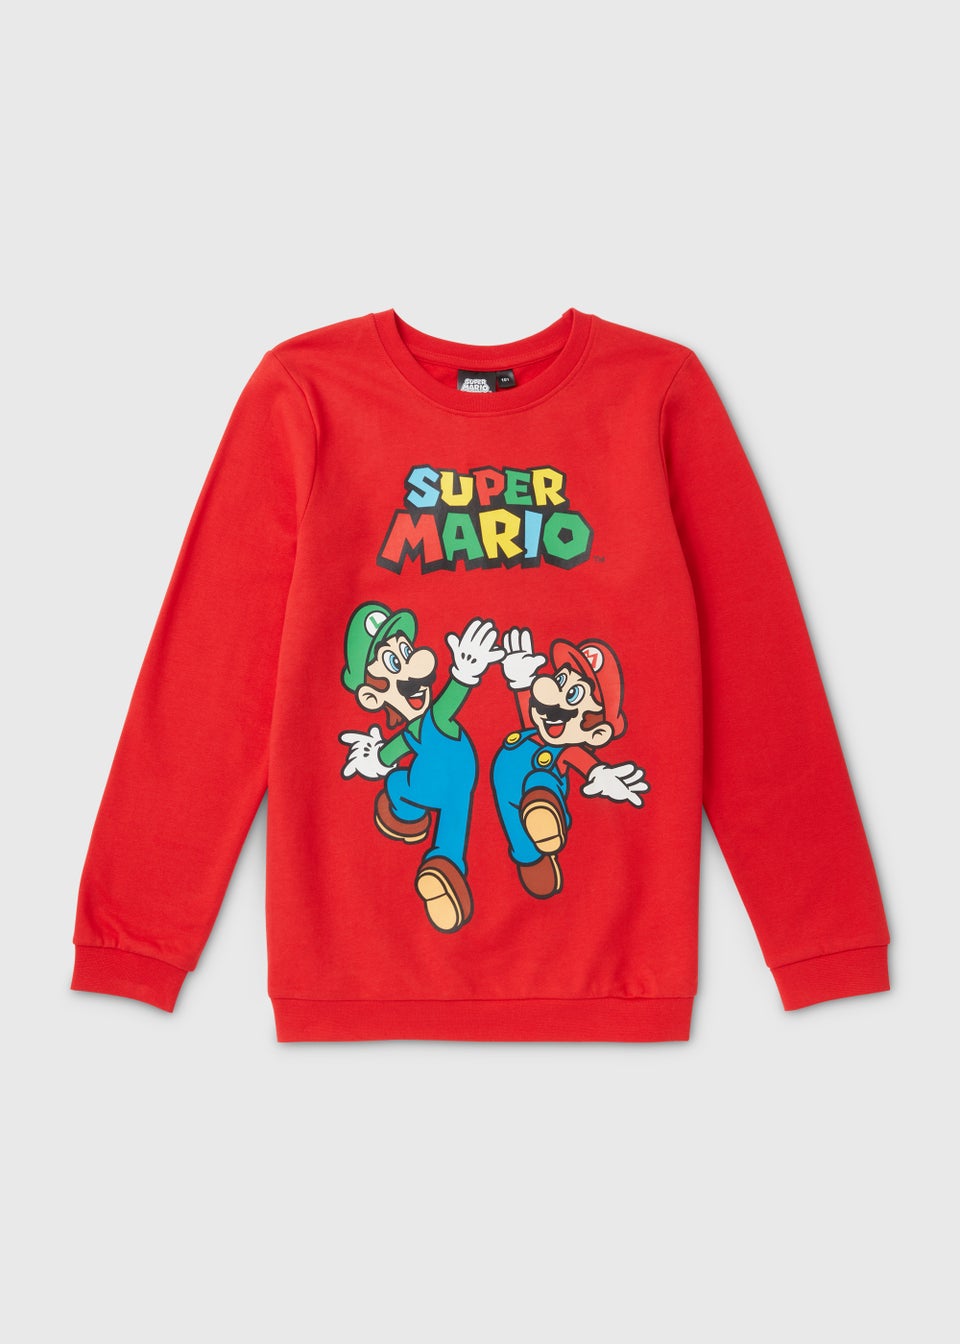 Красная толстовка Марио Nintendo